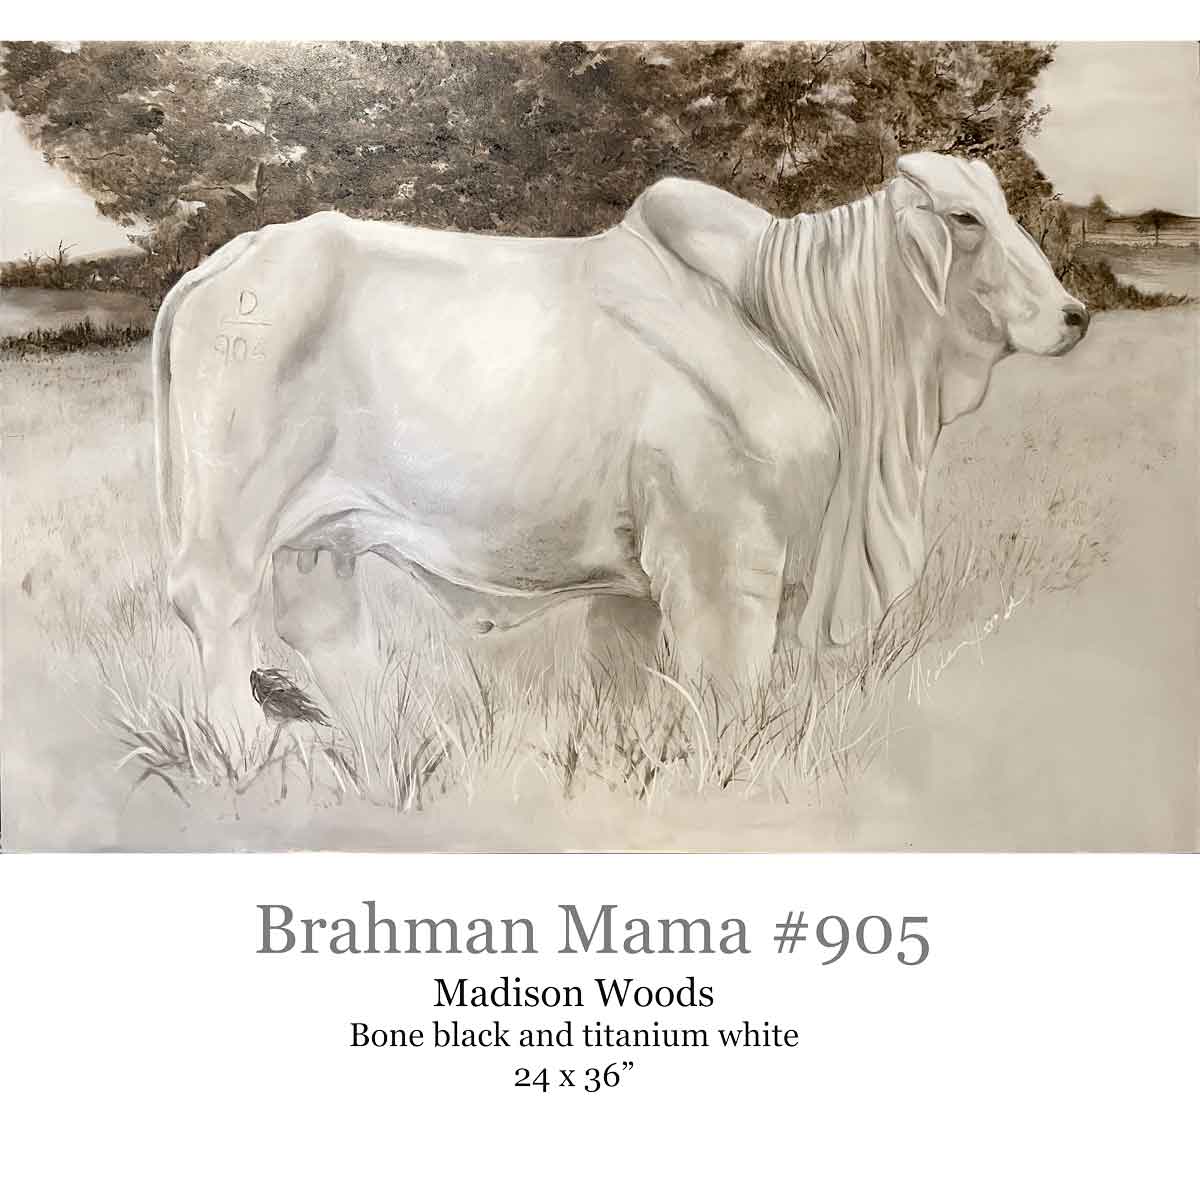 A portrait of a brahman cow.